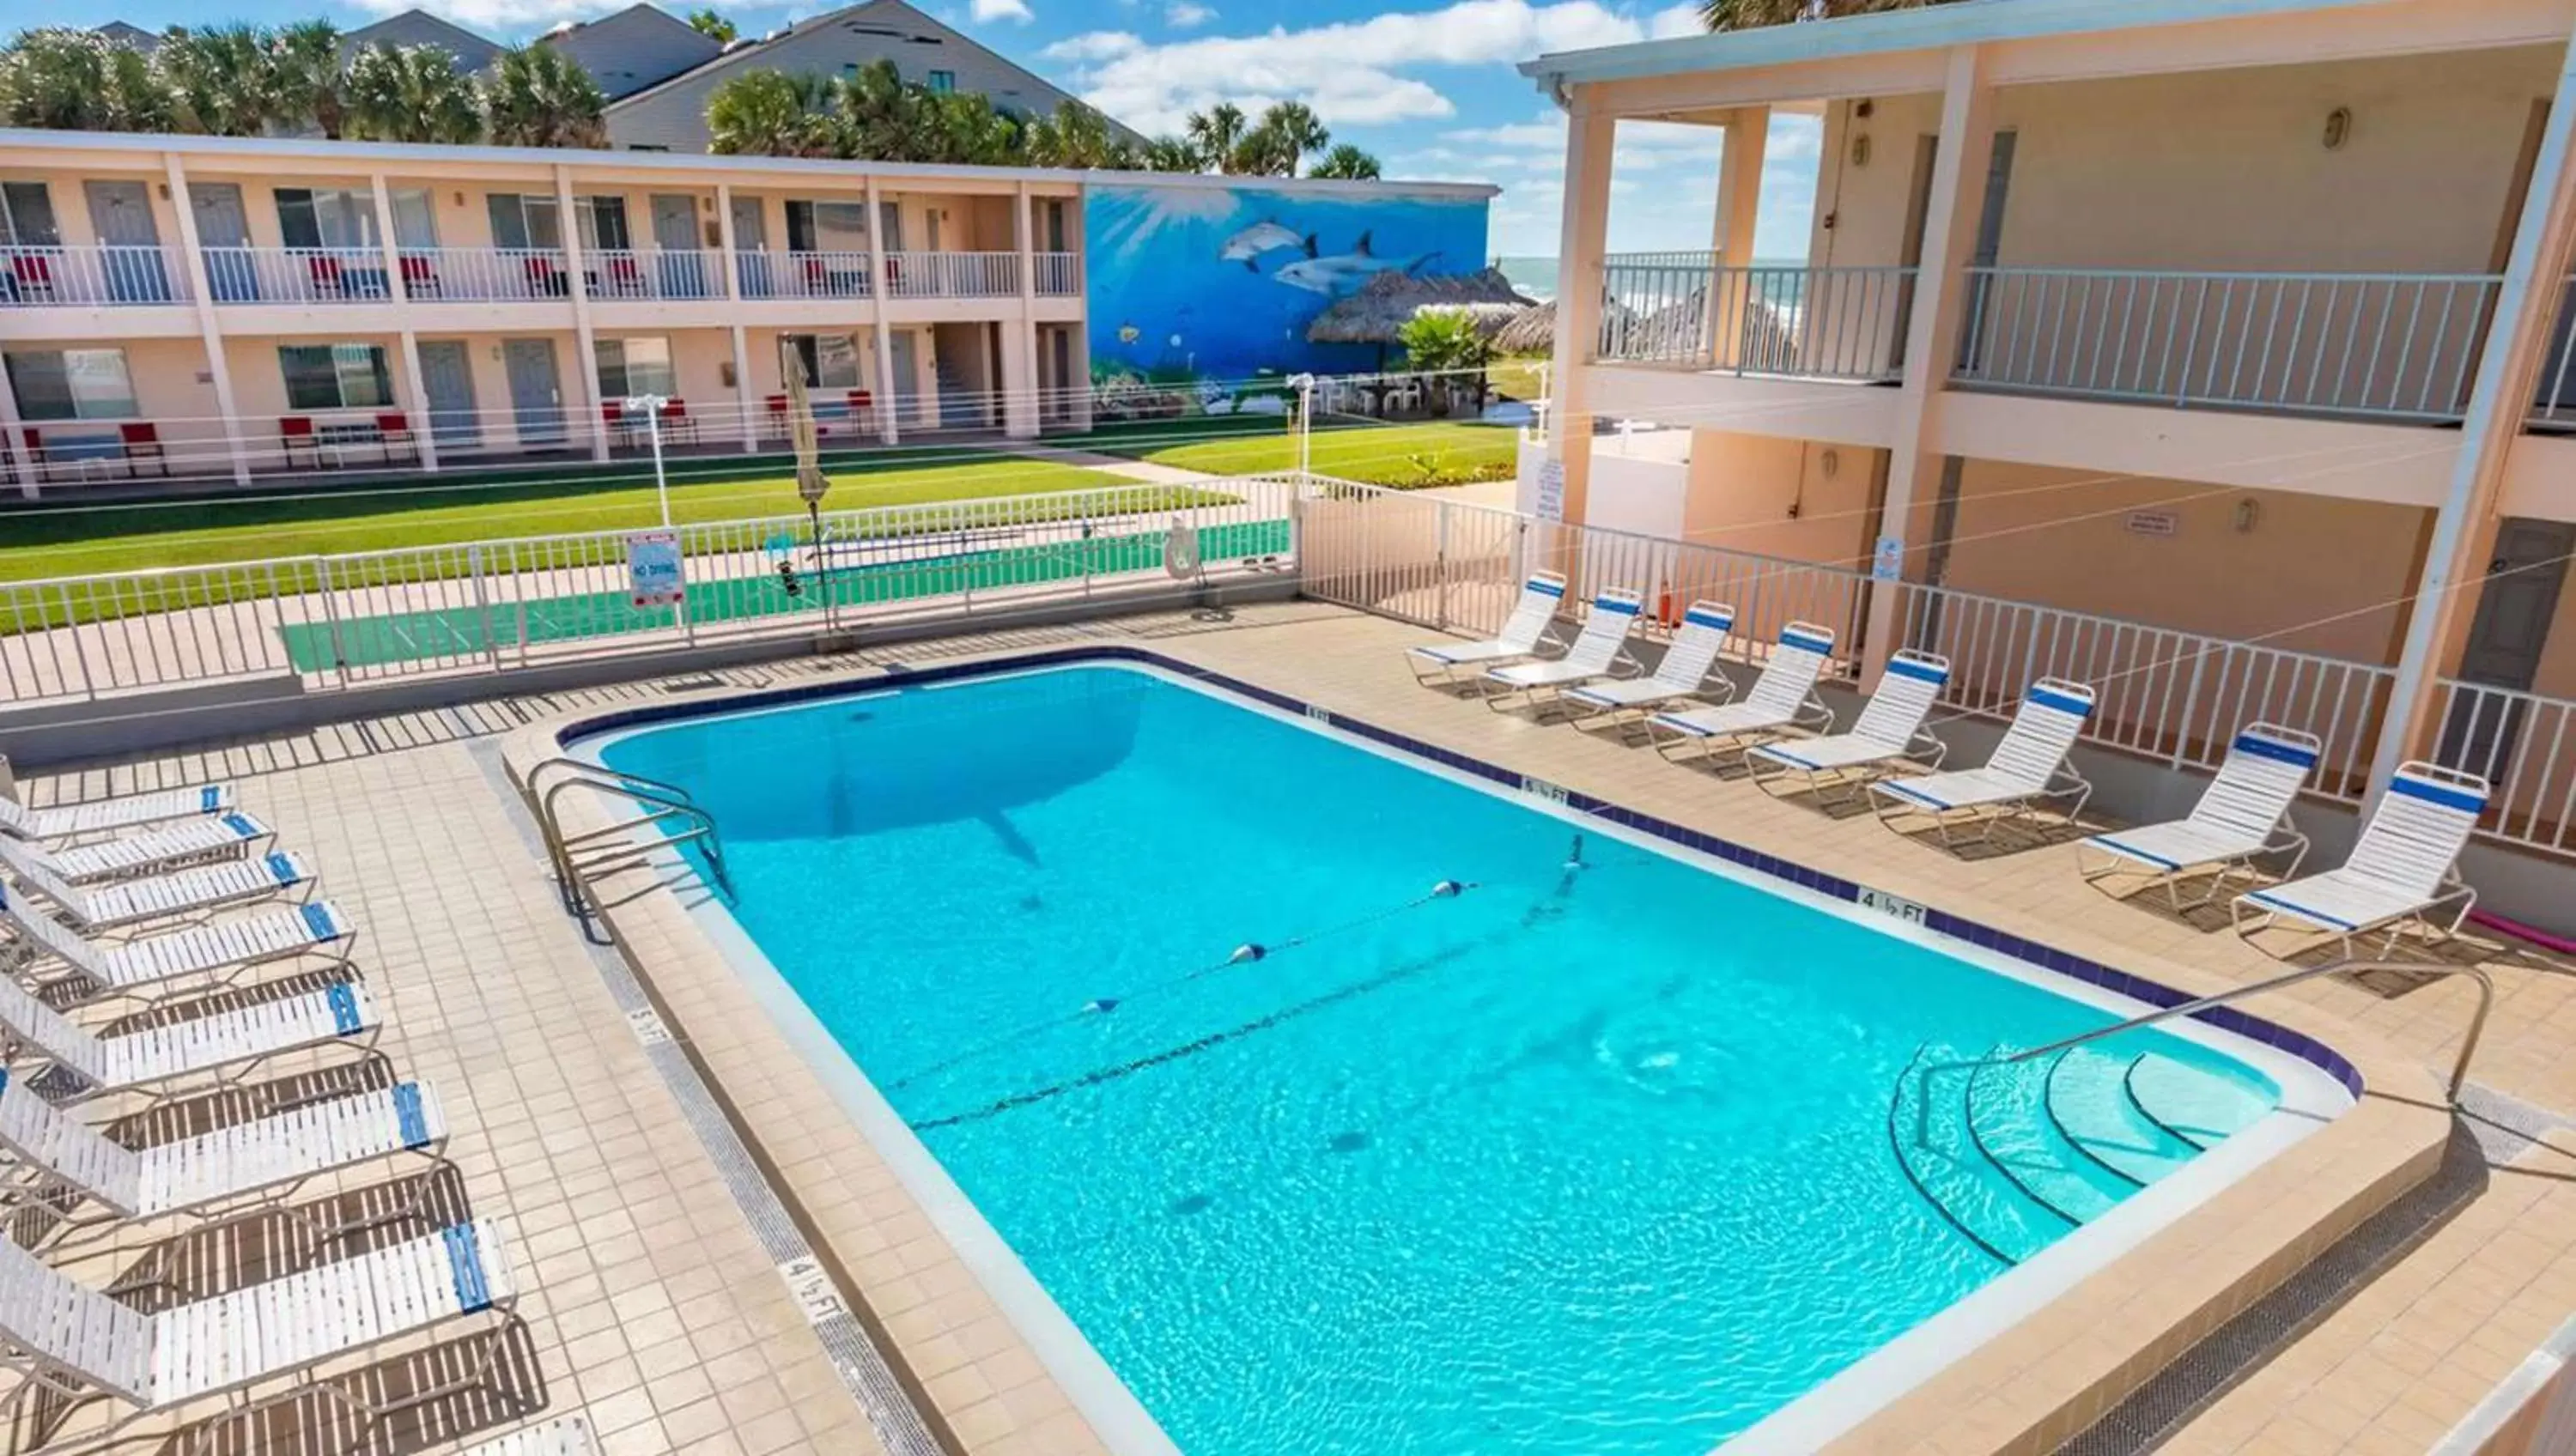 Swimming pool, Pool View in Belleair Beach Resort Motel